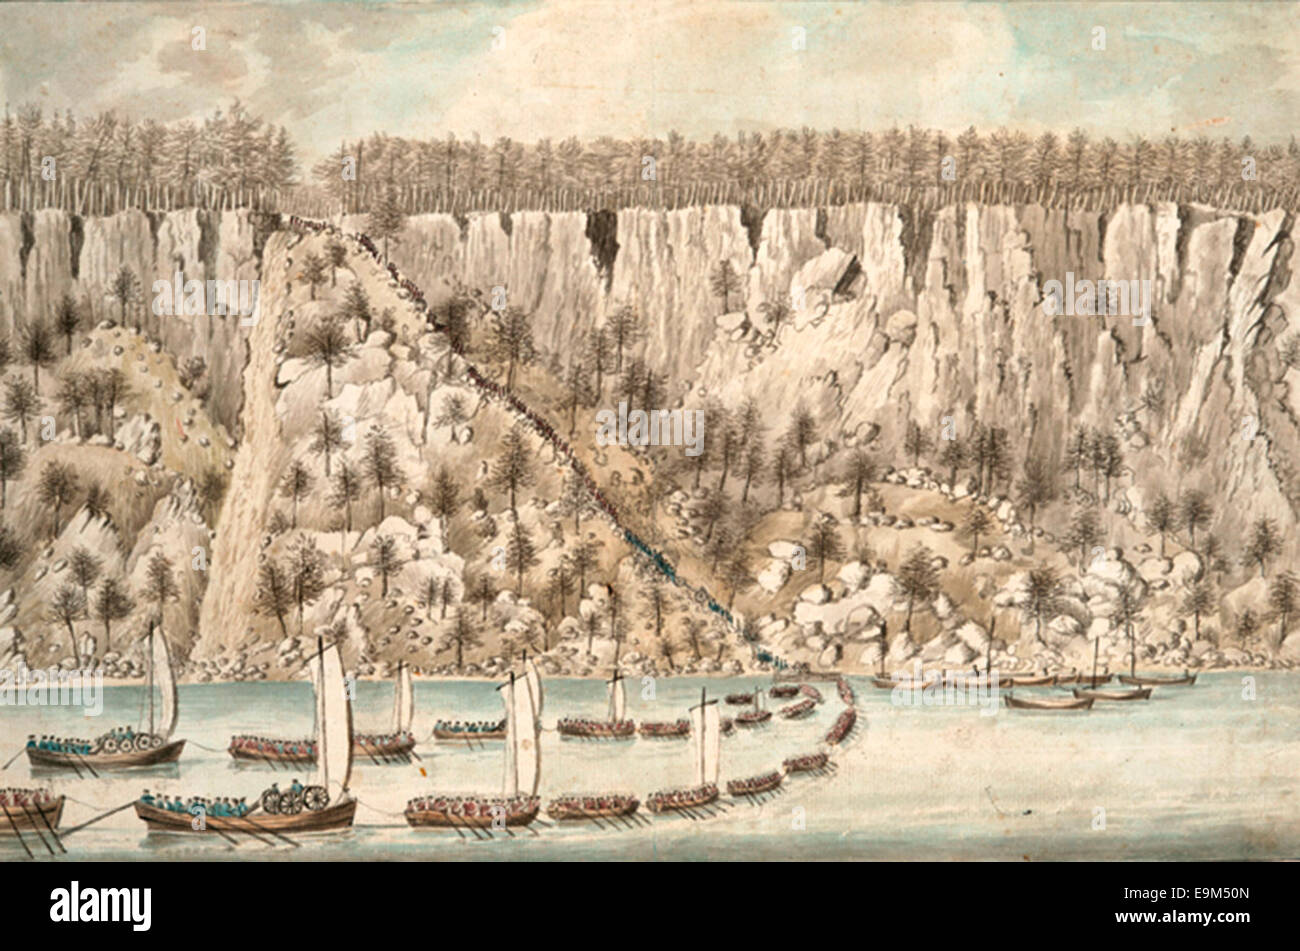 Darstellung der britischen Landung auf die Palisaden in der Nähe von Fort Lee, New Jersey während des Unabhängigkeitskrieges der USA Stockfoto